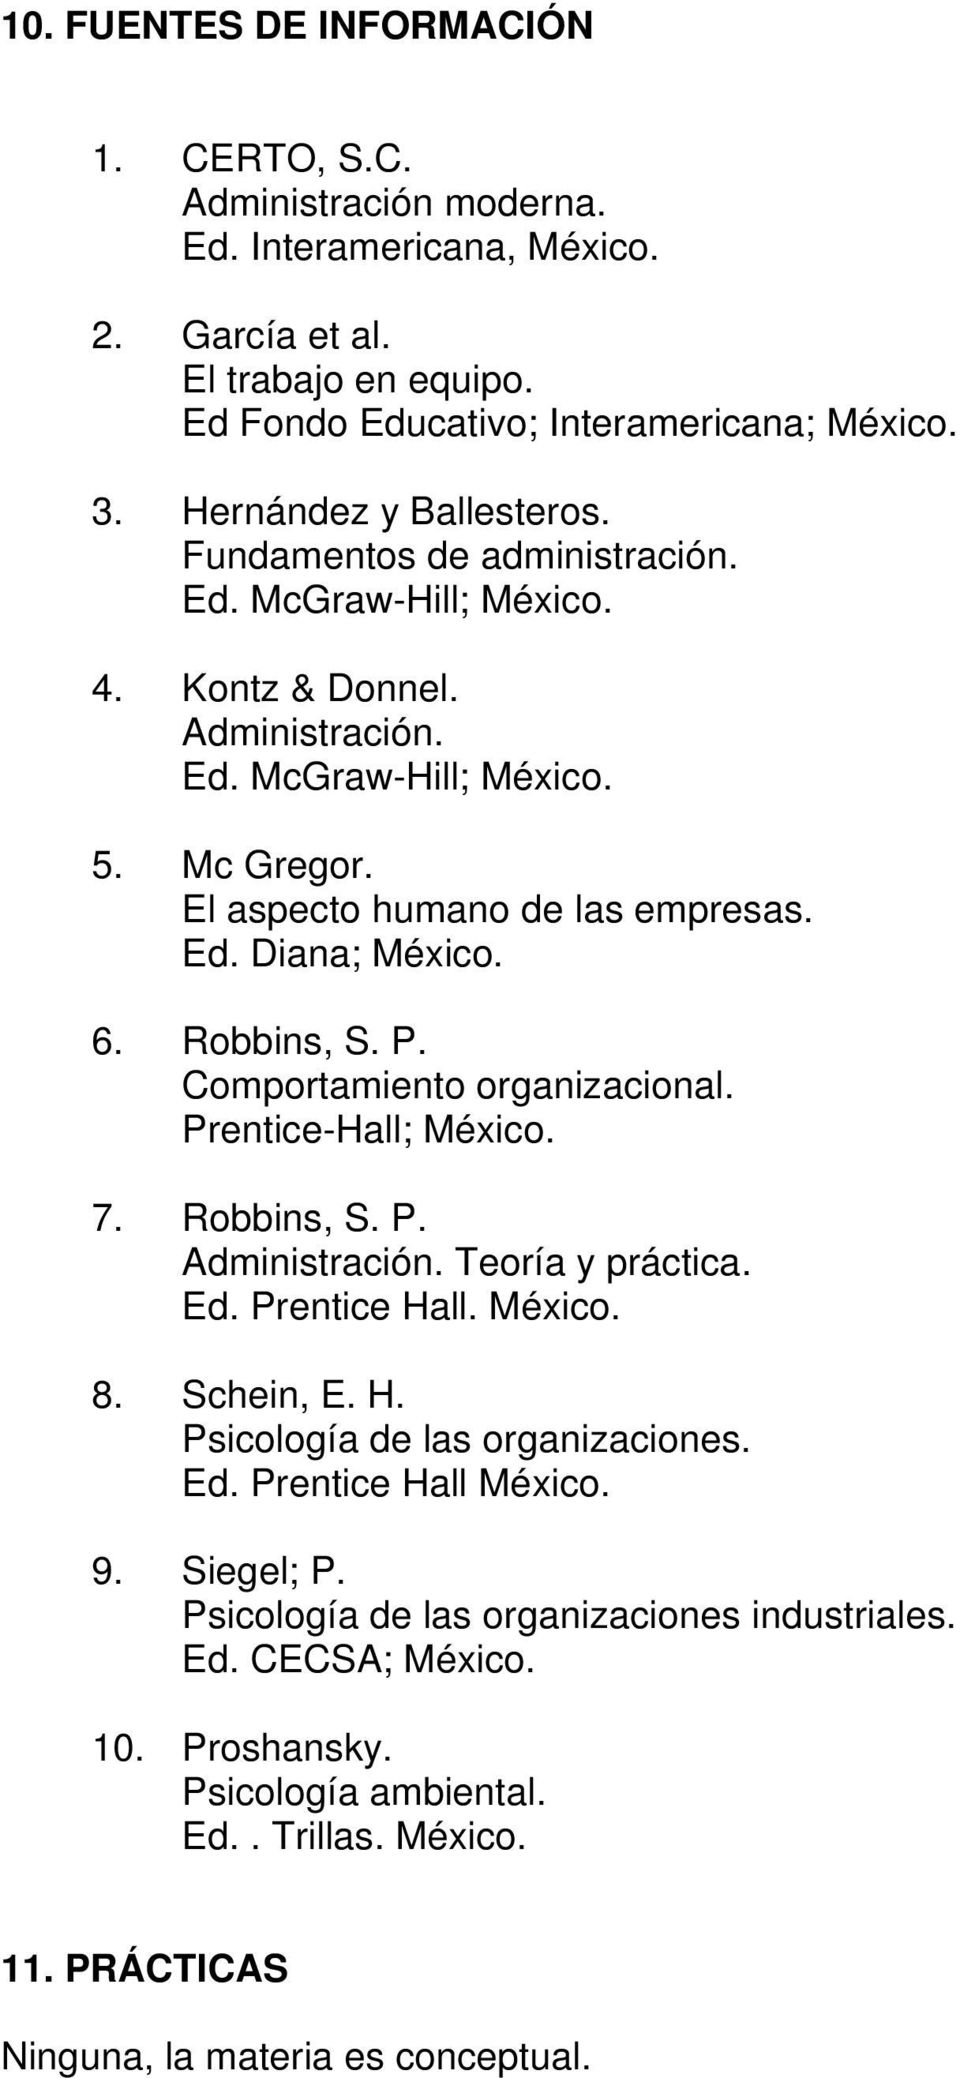 6. Robbins, S. P. Comportamiento organizacional. Prentice-Hall; México. 7. Robbins, S. P. Administración. Teoría y práctica. Ed. Prentice Hall. México. 8. Schein, E. H. Psicología de las organizaciones.